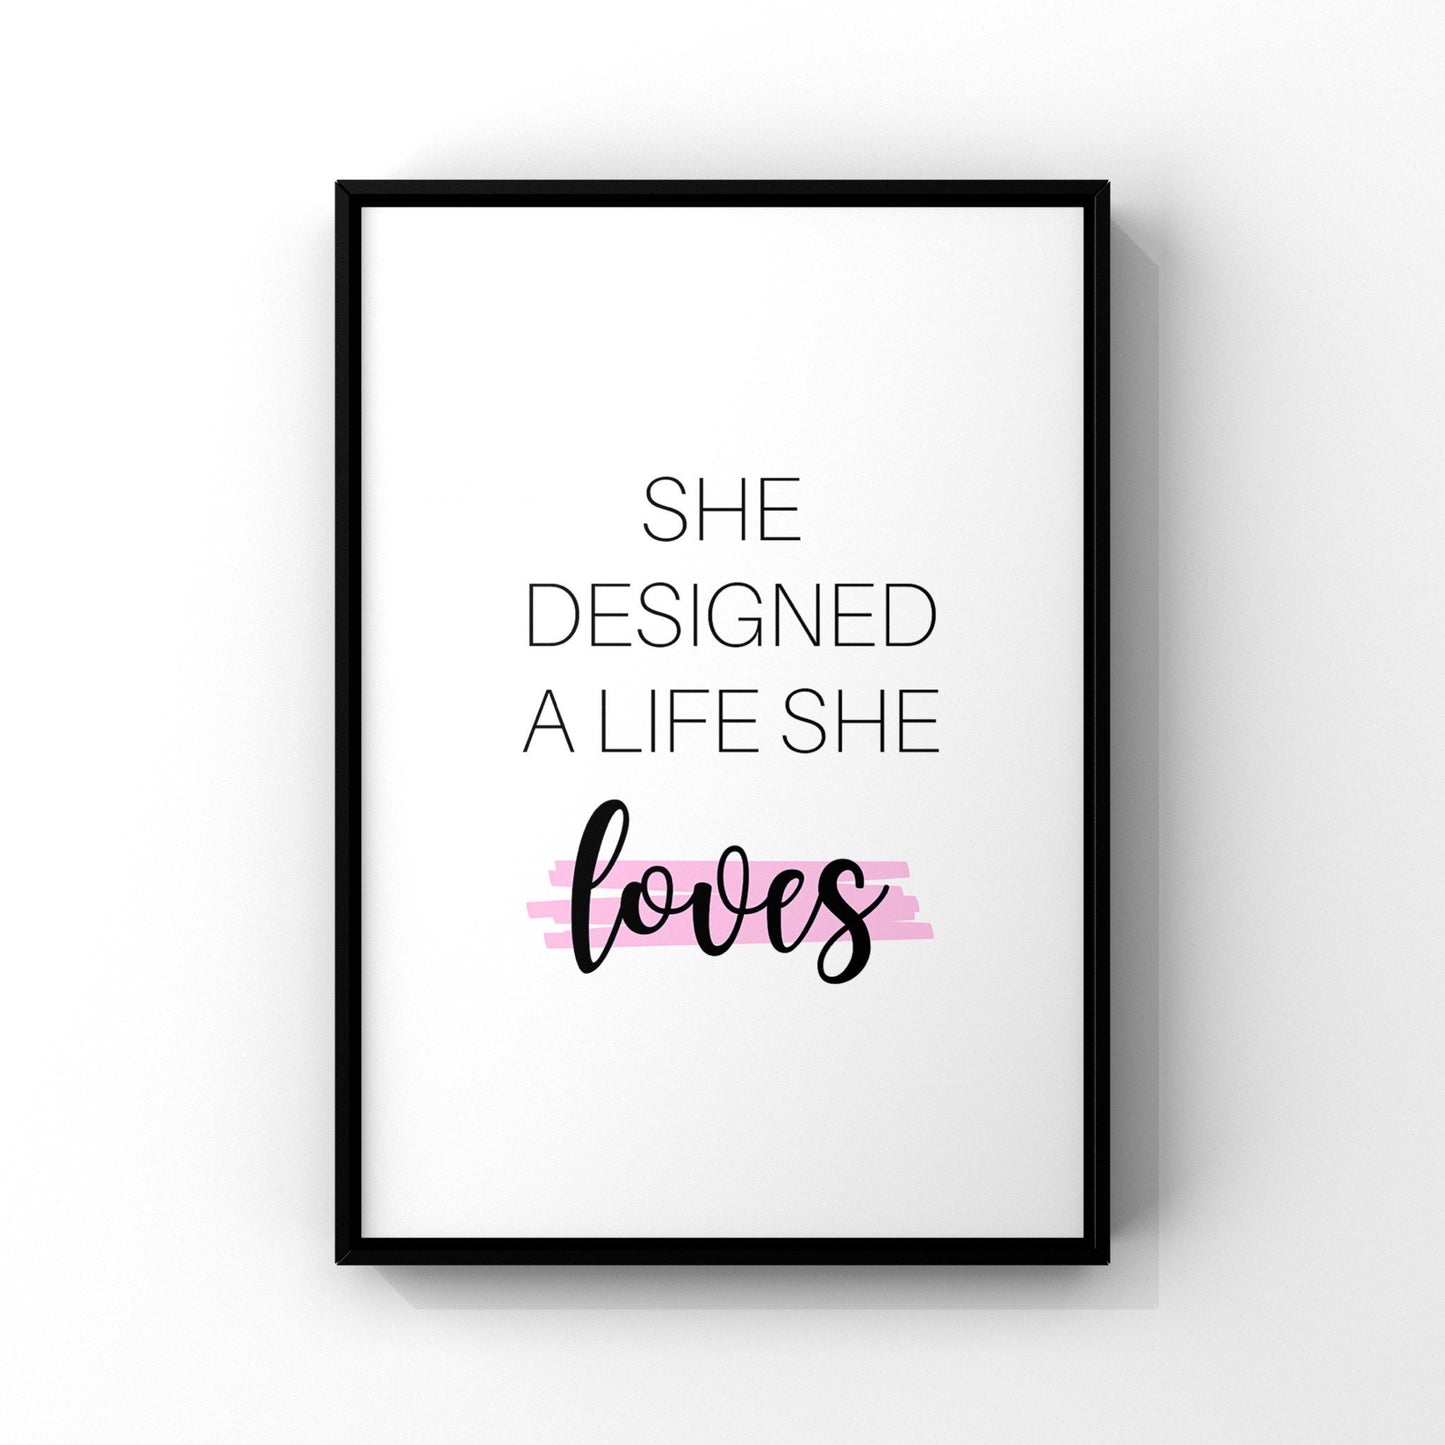 She designed a life she loves